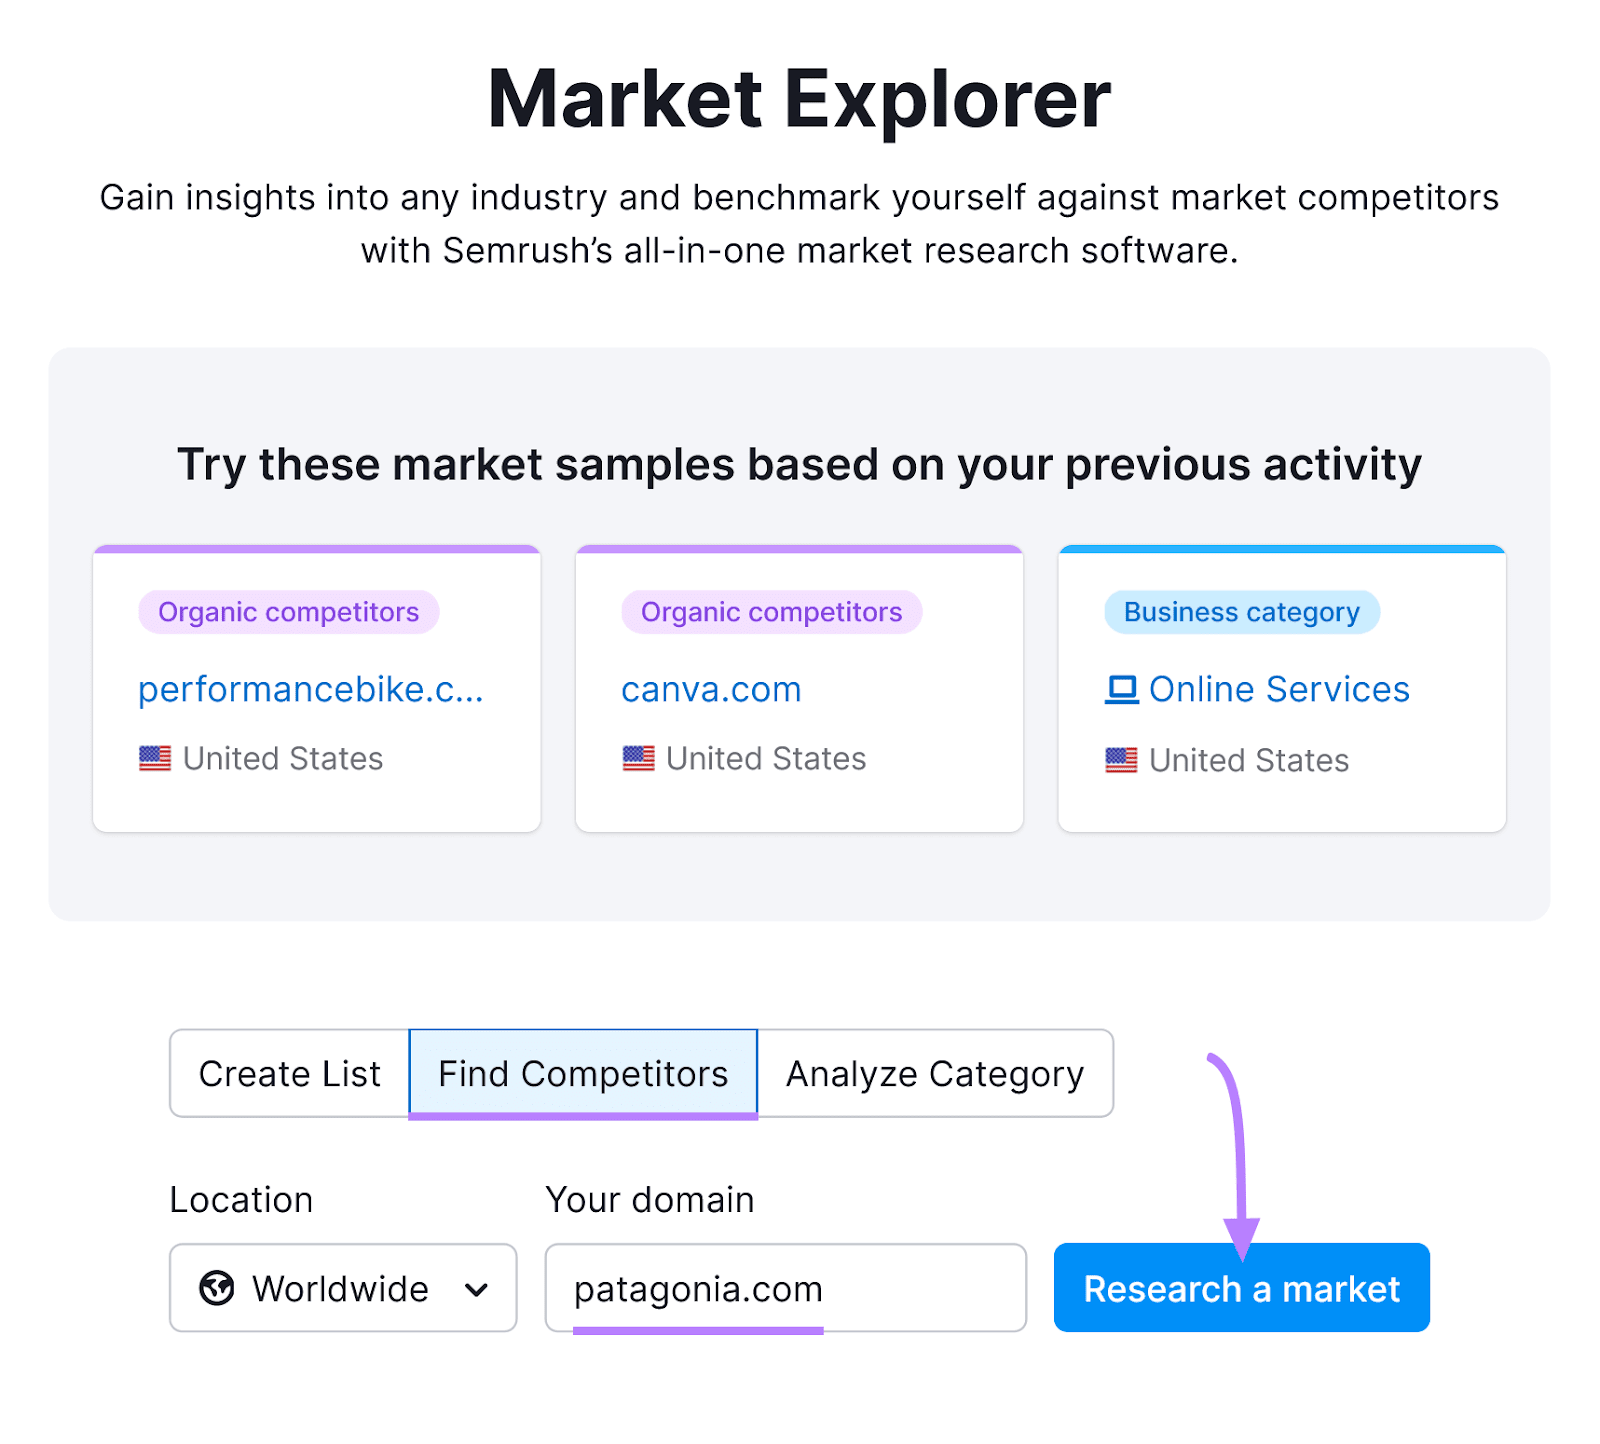 "patagonia.com" entered into the Market Explorer tool